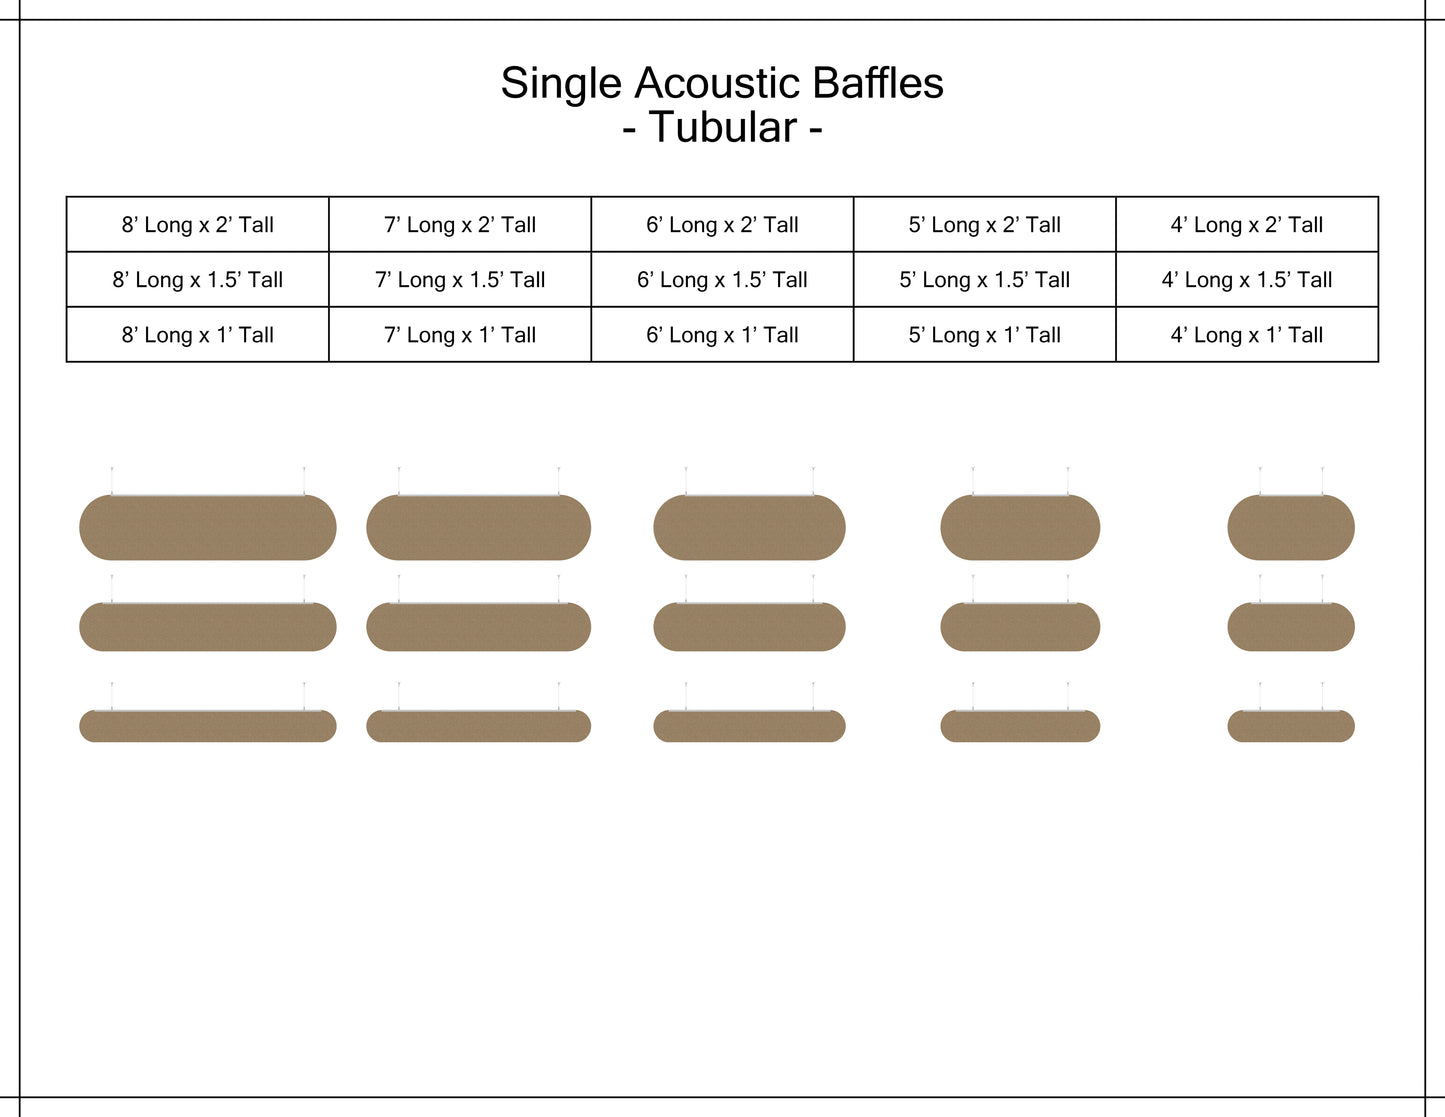 Single_acoustic_baffle_tubular